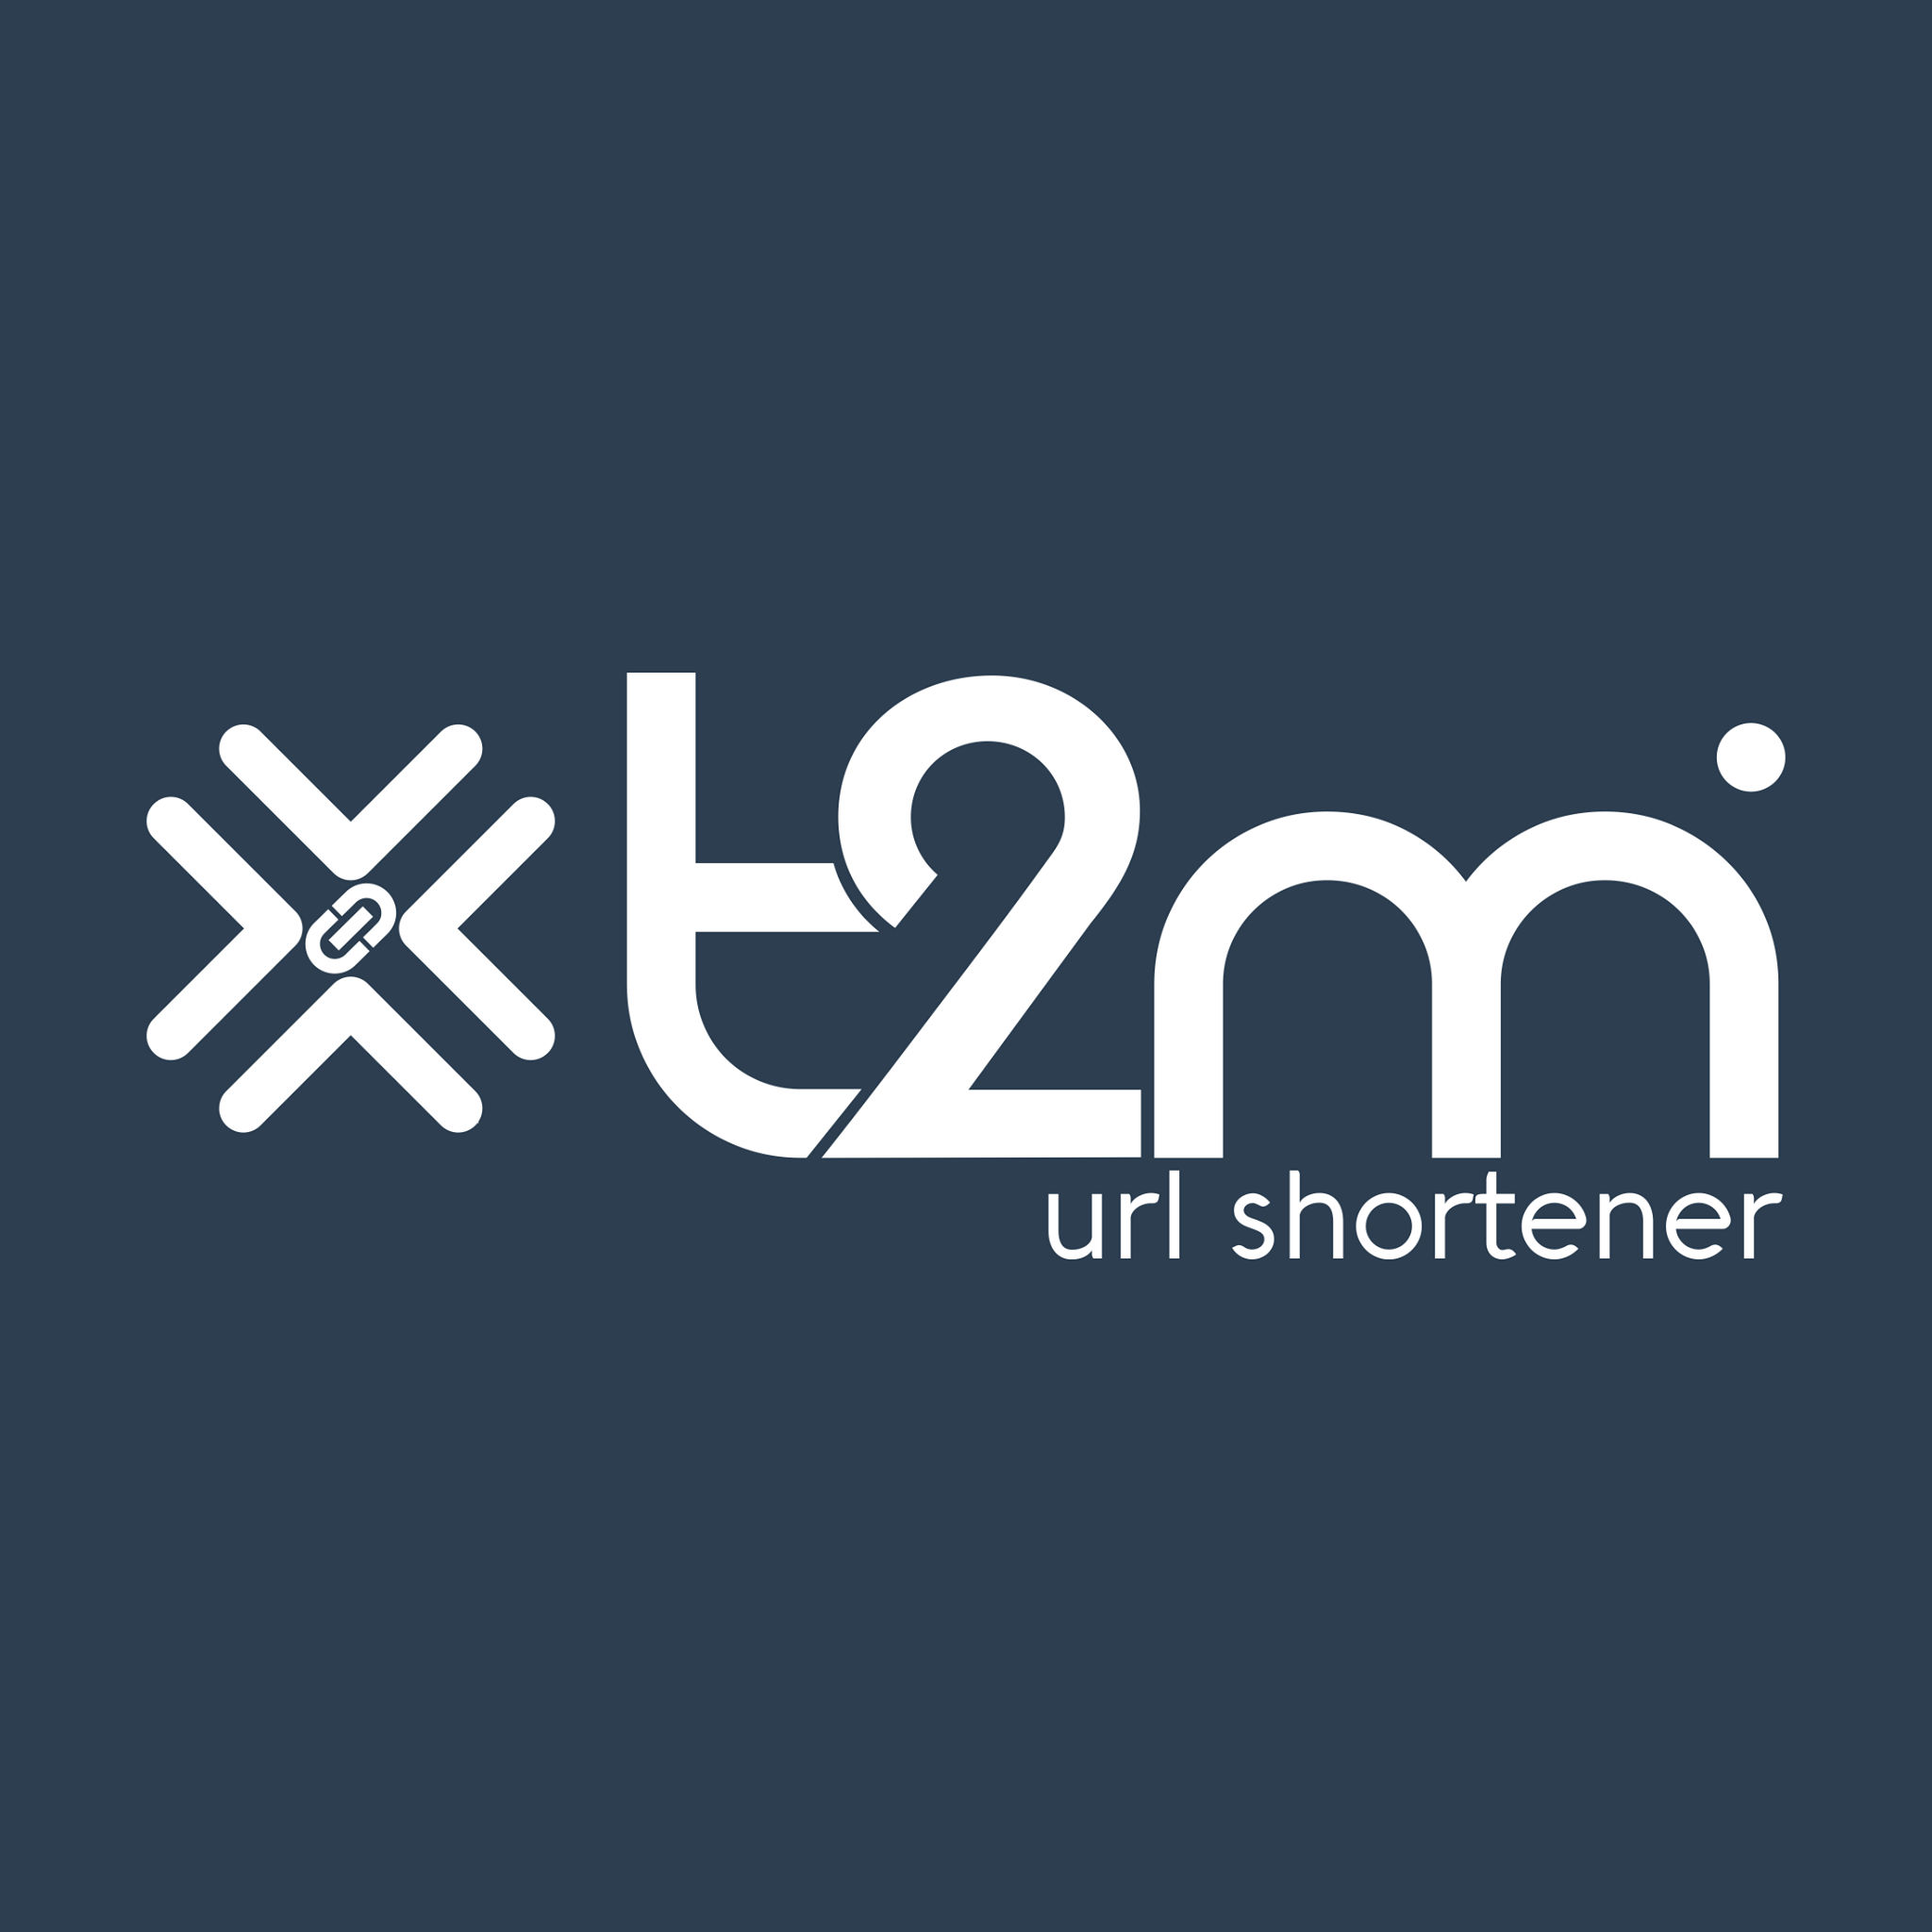 T2M URL Shortener